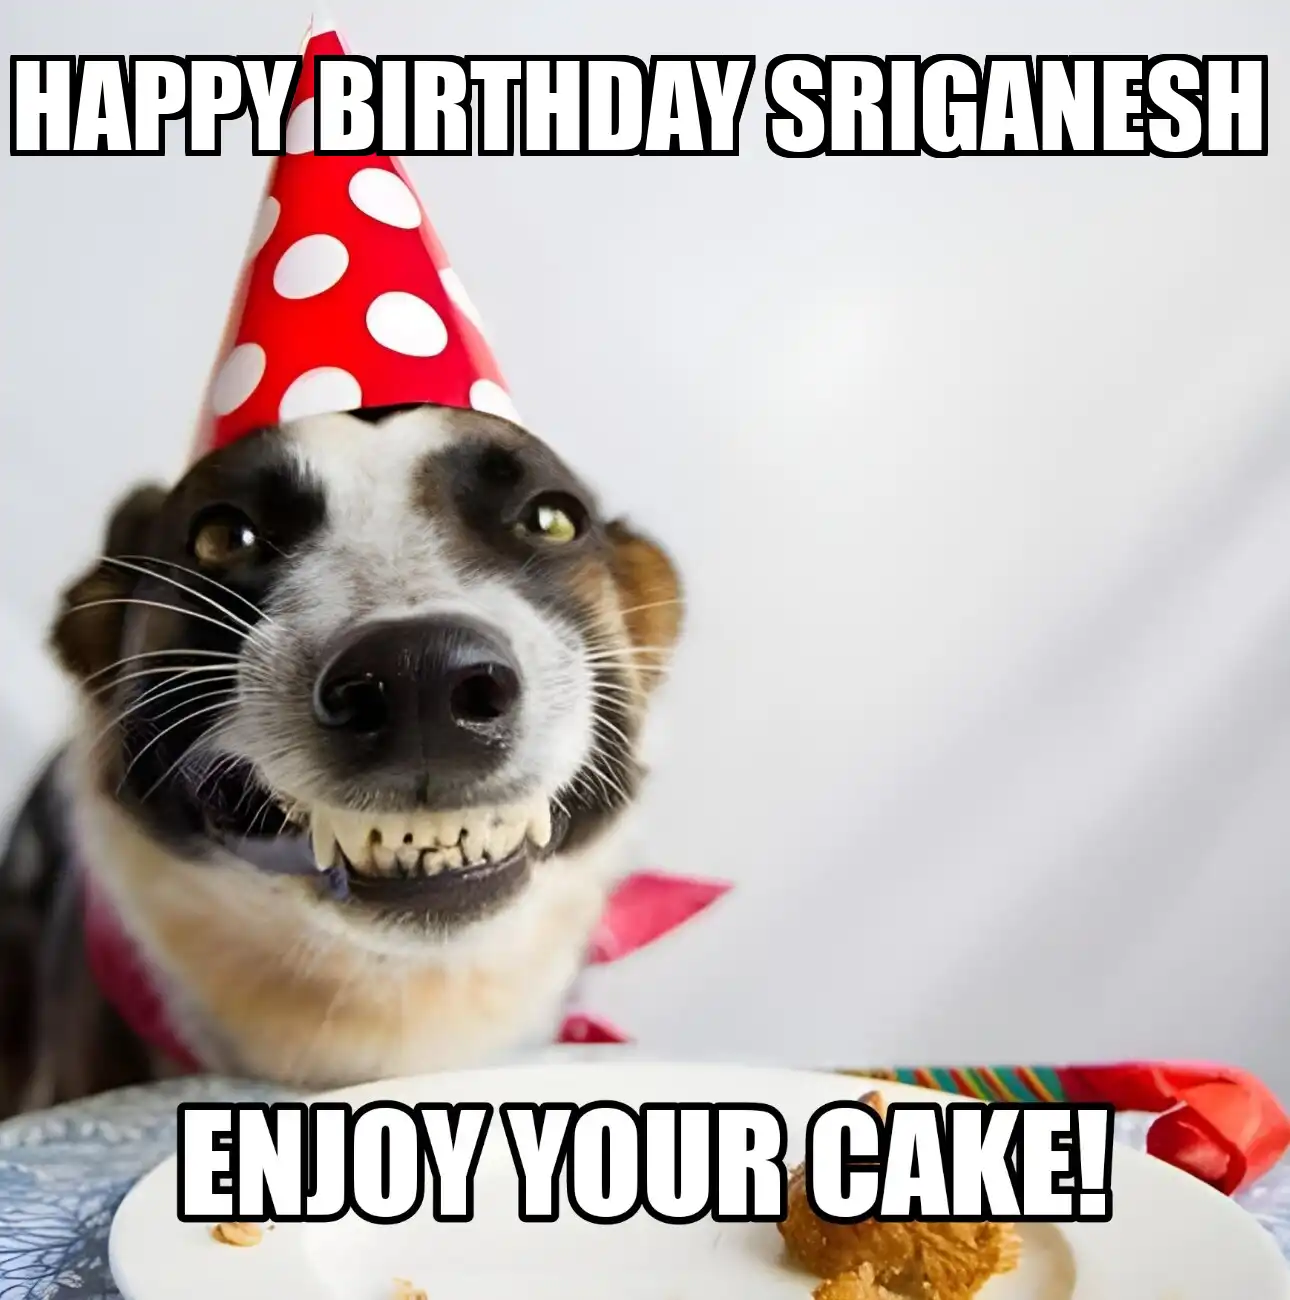 Happy Birthday Sriganesh Enjoy Your Cake Dog Meme